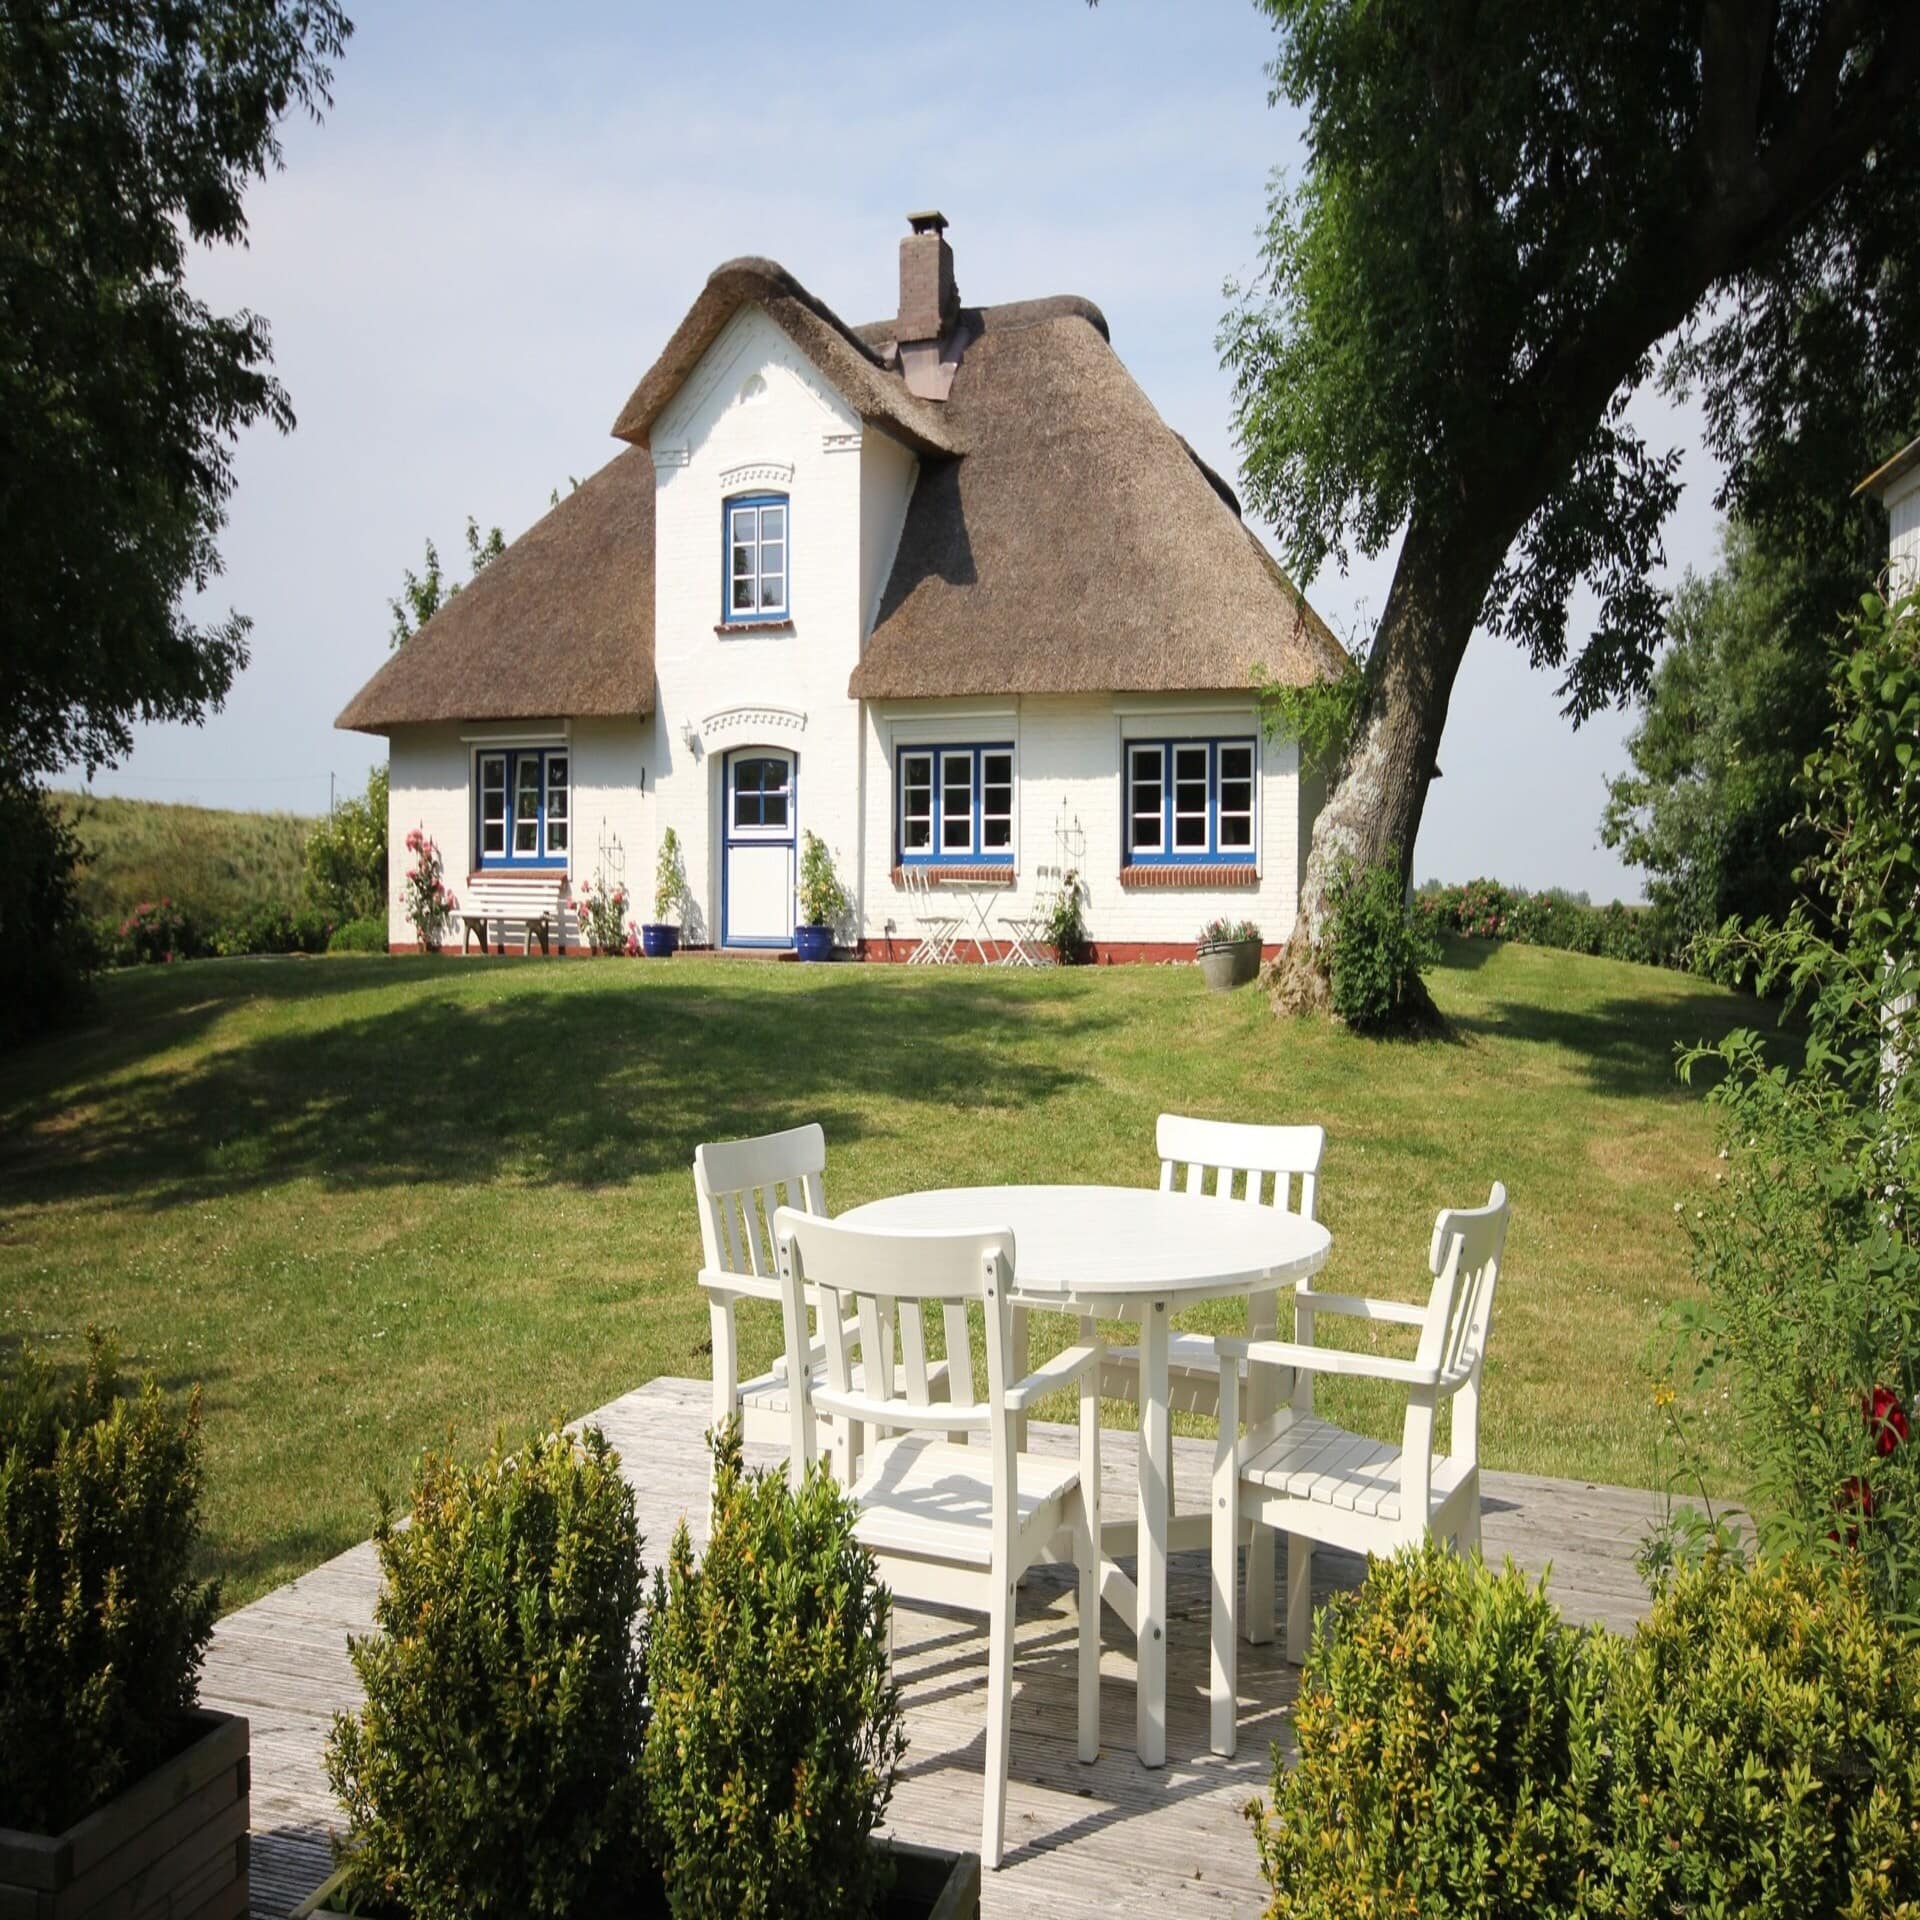 Blick von einer Terrasse mit weißen Möbeln auf ein Friesenhaus mit Reetdach in einem Garten.